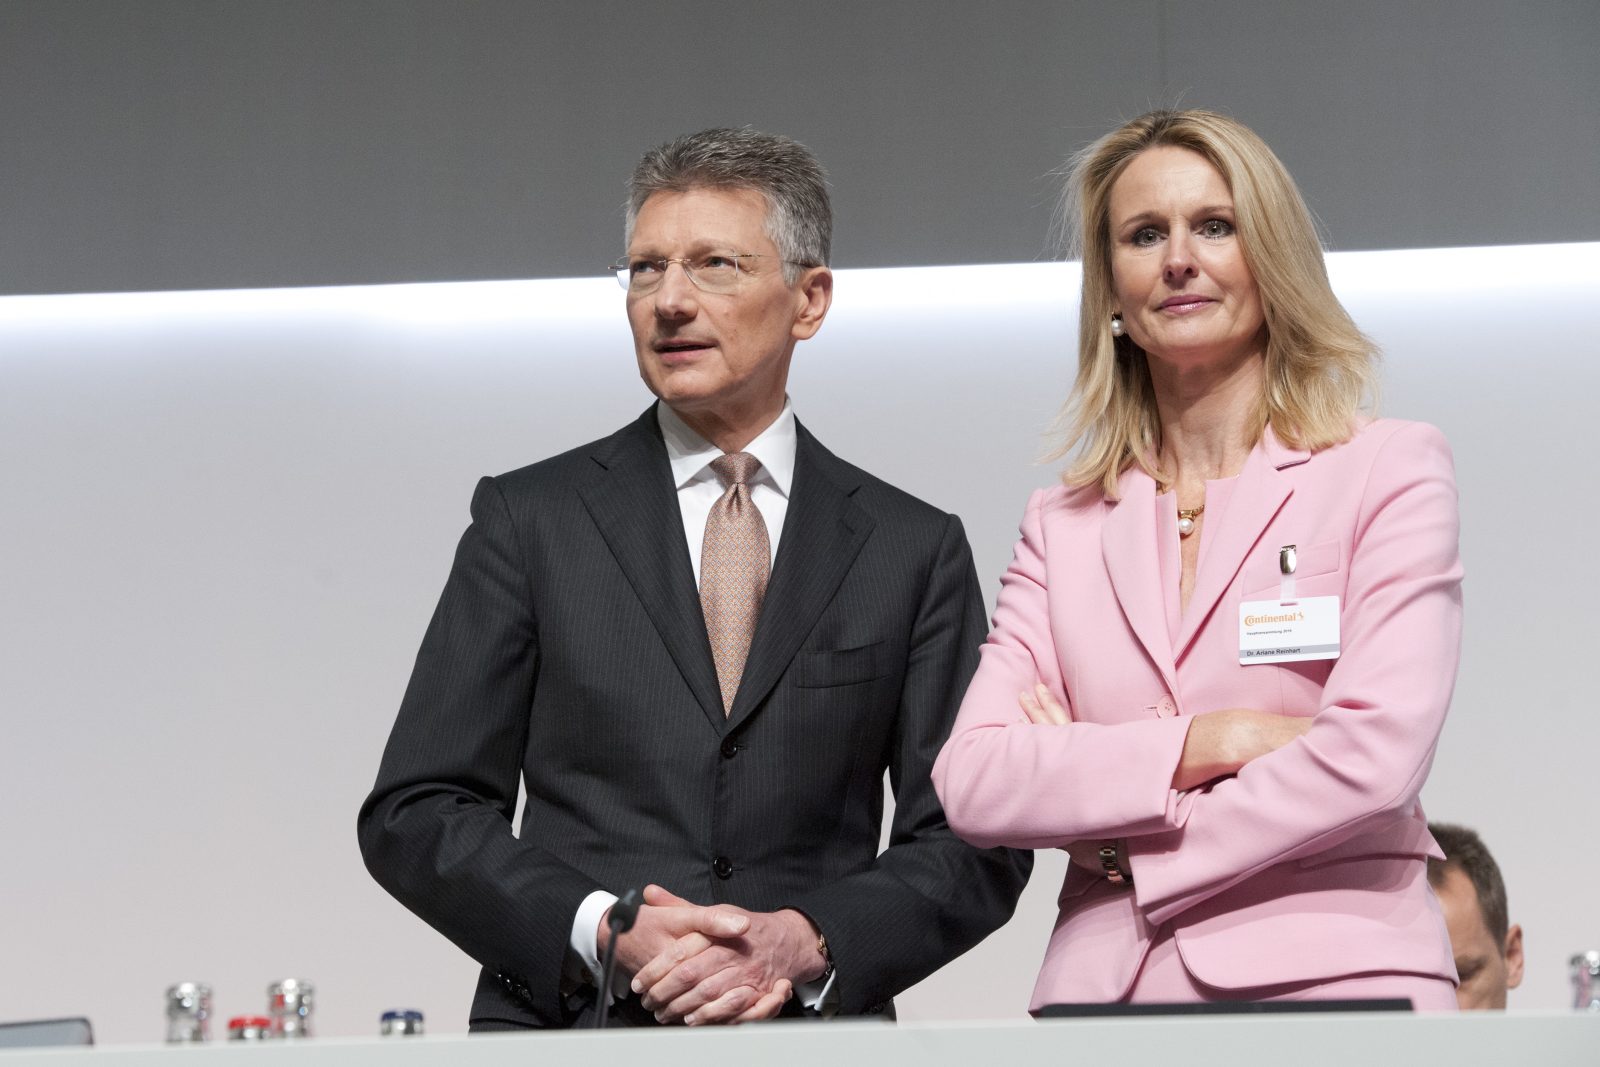 Der Vorstandsvorsitzende der Continental Elmar Degenhart und das Vorstandsmitglied Ariane Reinhart: Vorstandsfrauen bei SDax-Unternehmen verdienen erstmals mehr als Männer